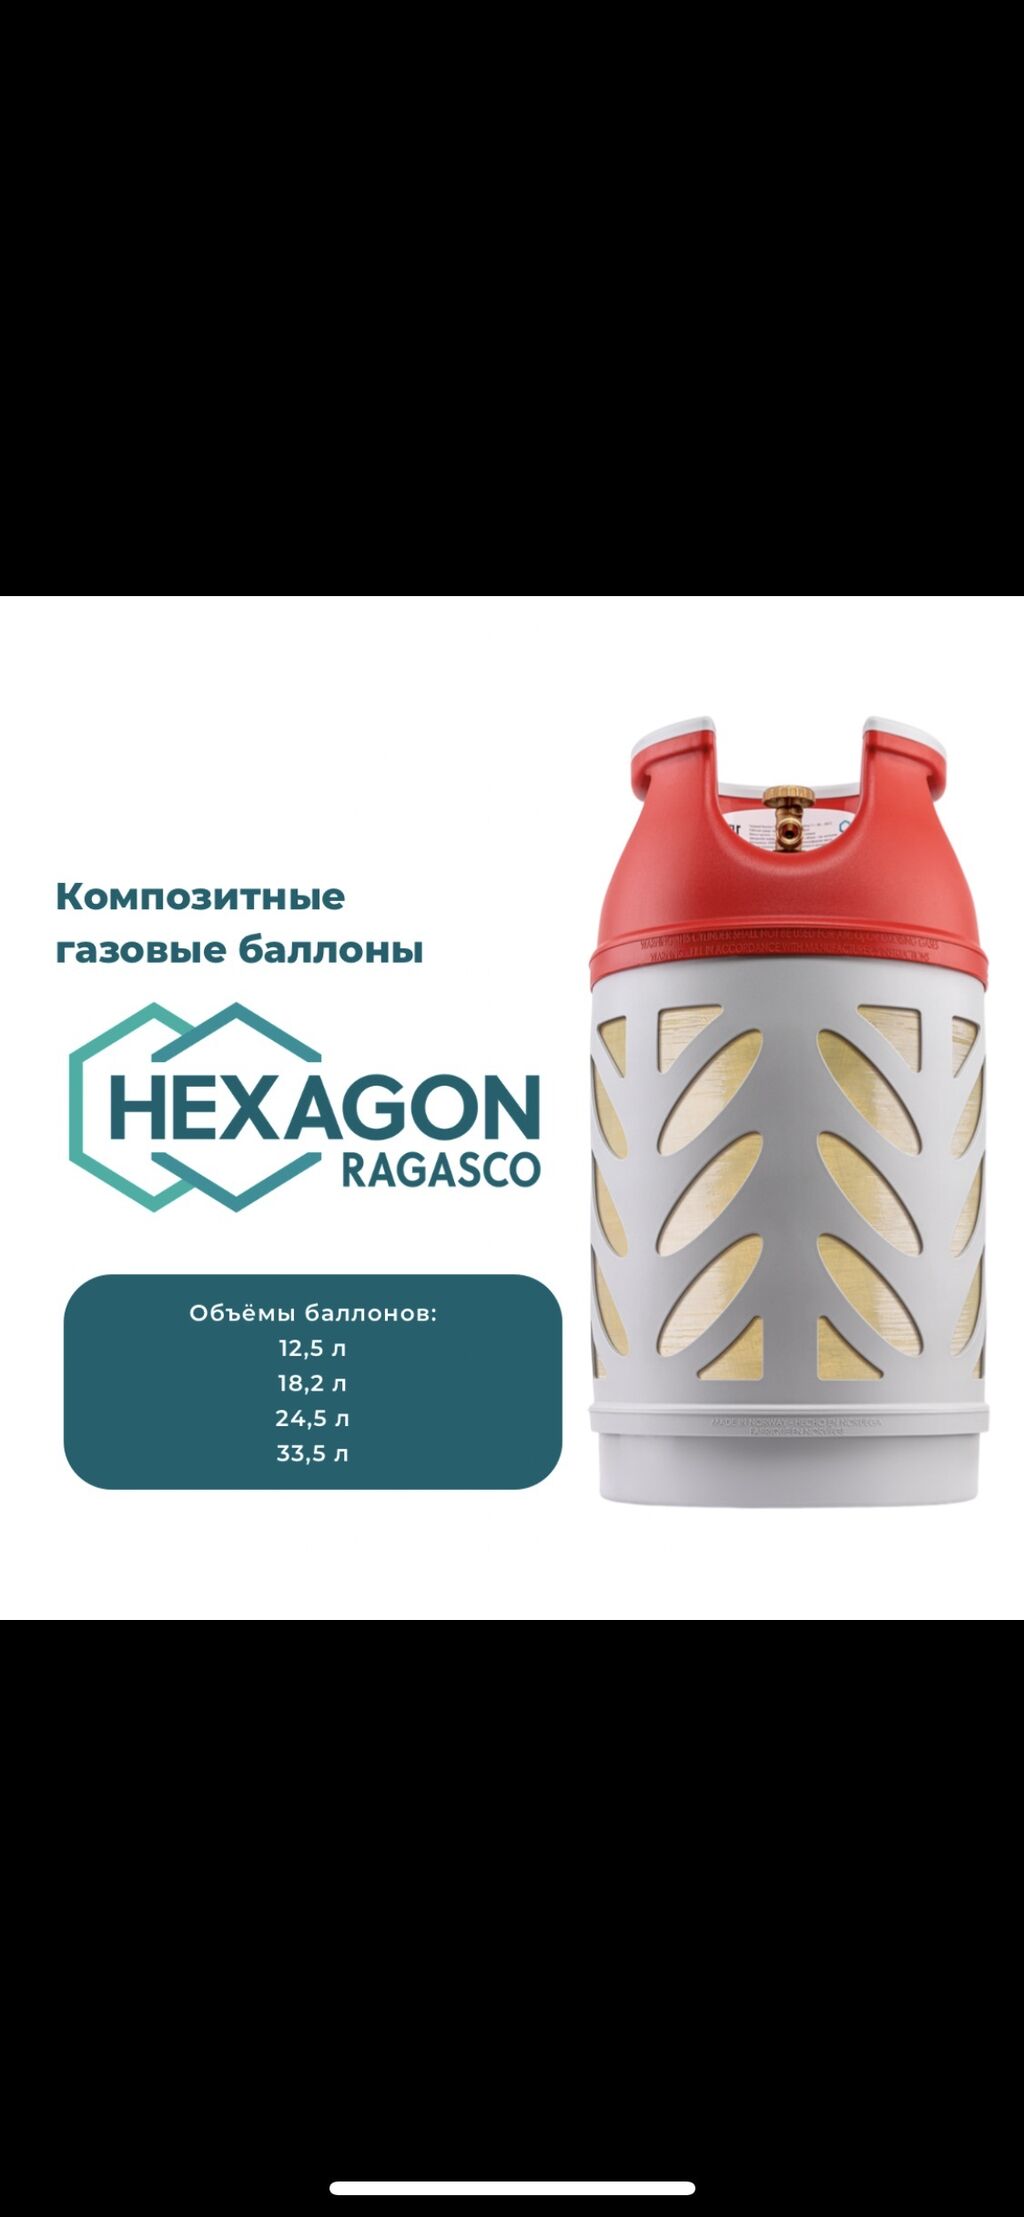 Композитный газовый баллон Hexagon Ragasco —: 12000 KGS овые баллоны .